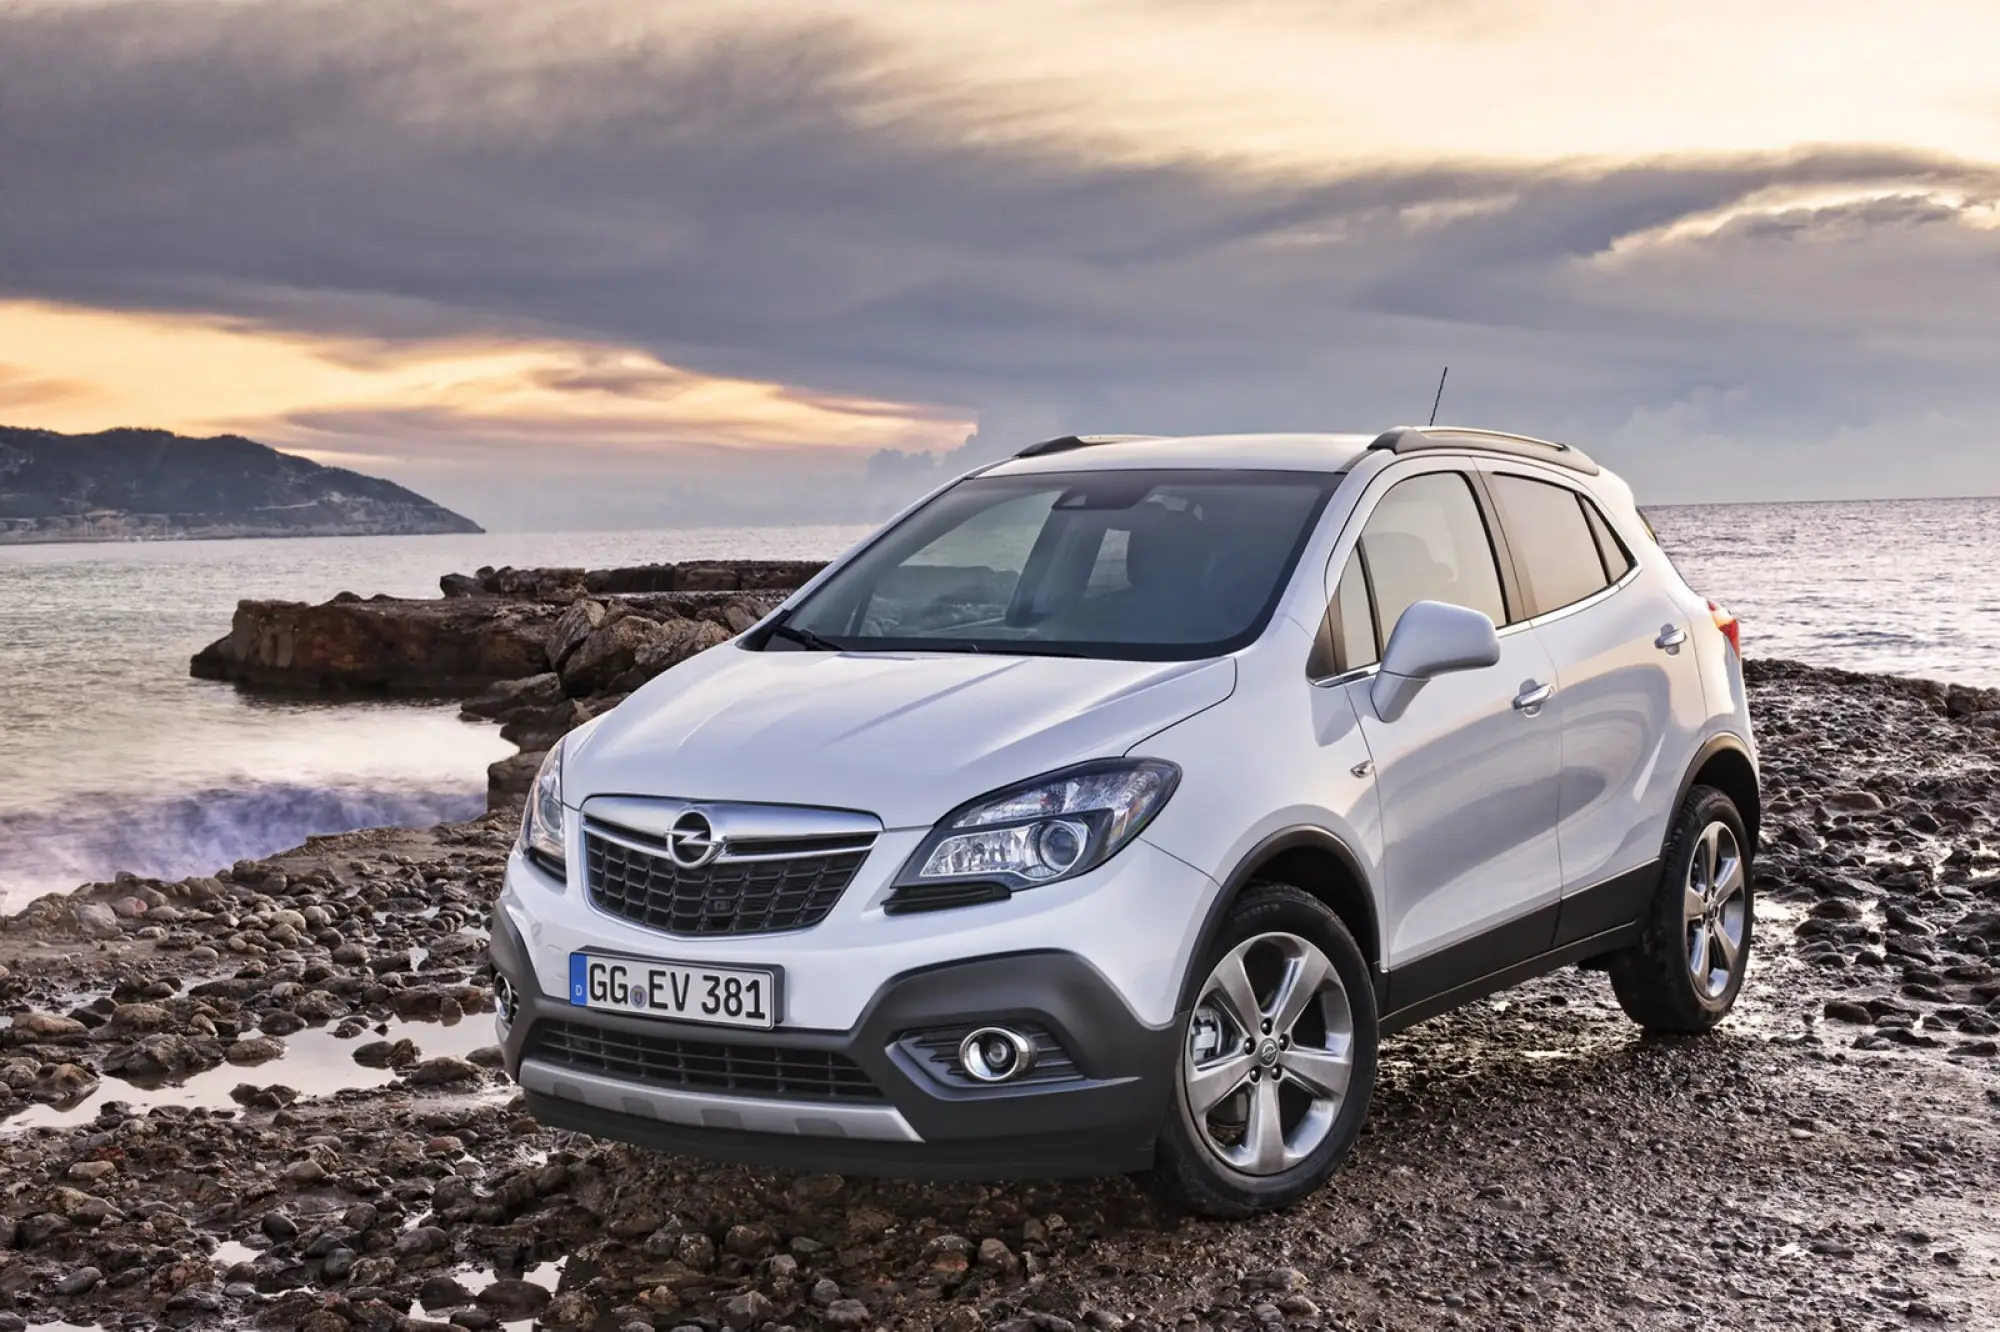 Opel Mokka nuove foto ufficiali - 1